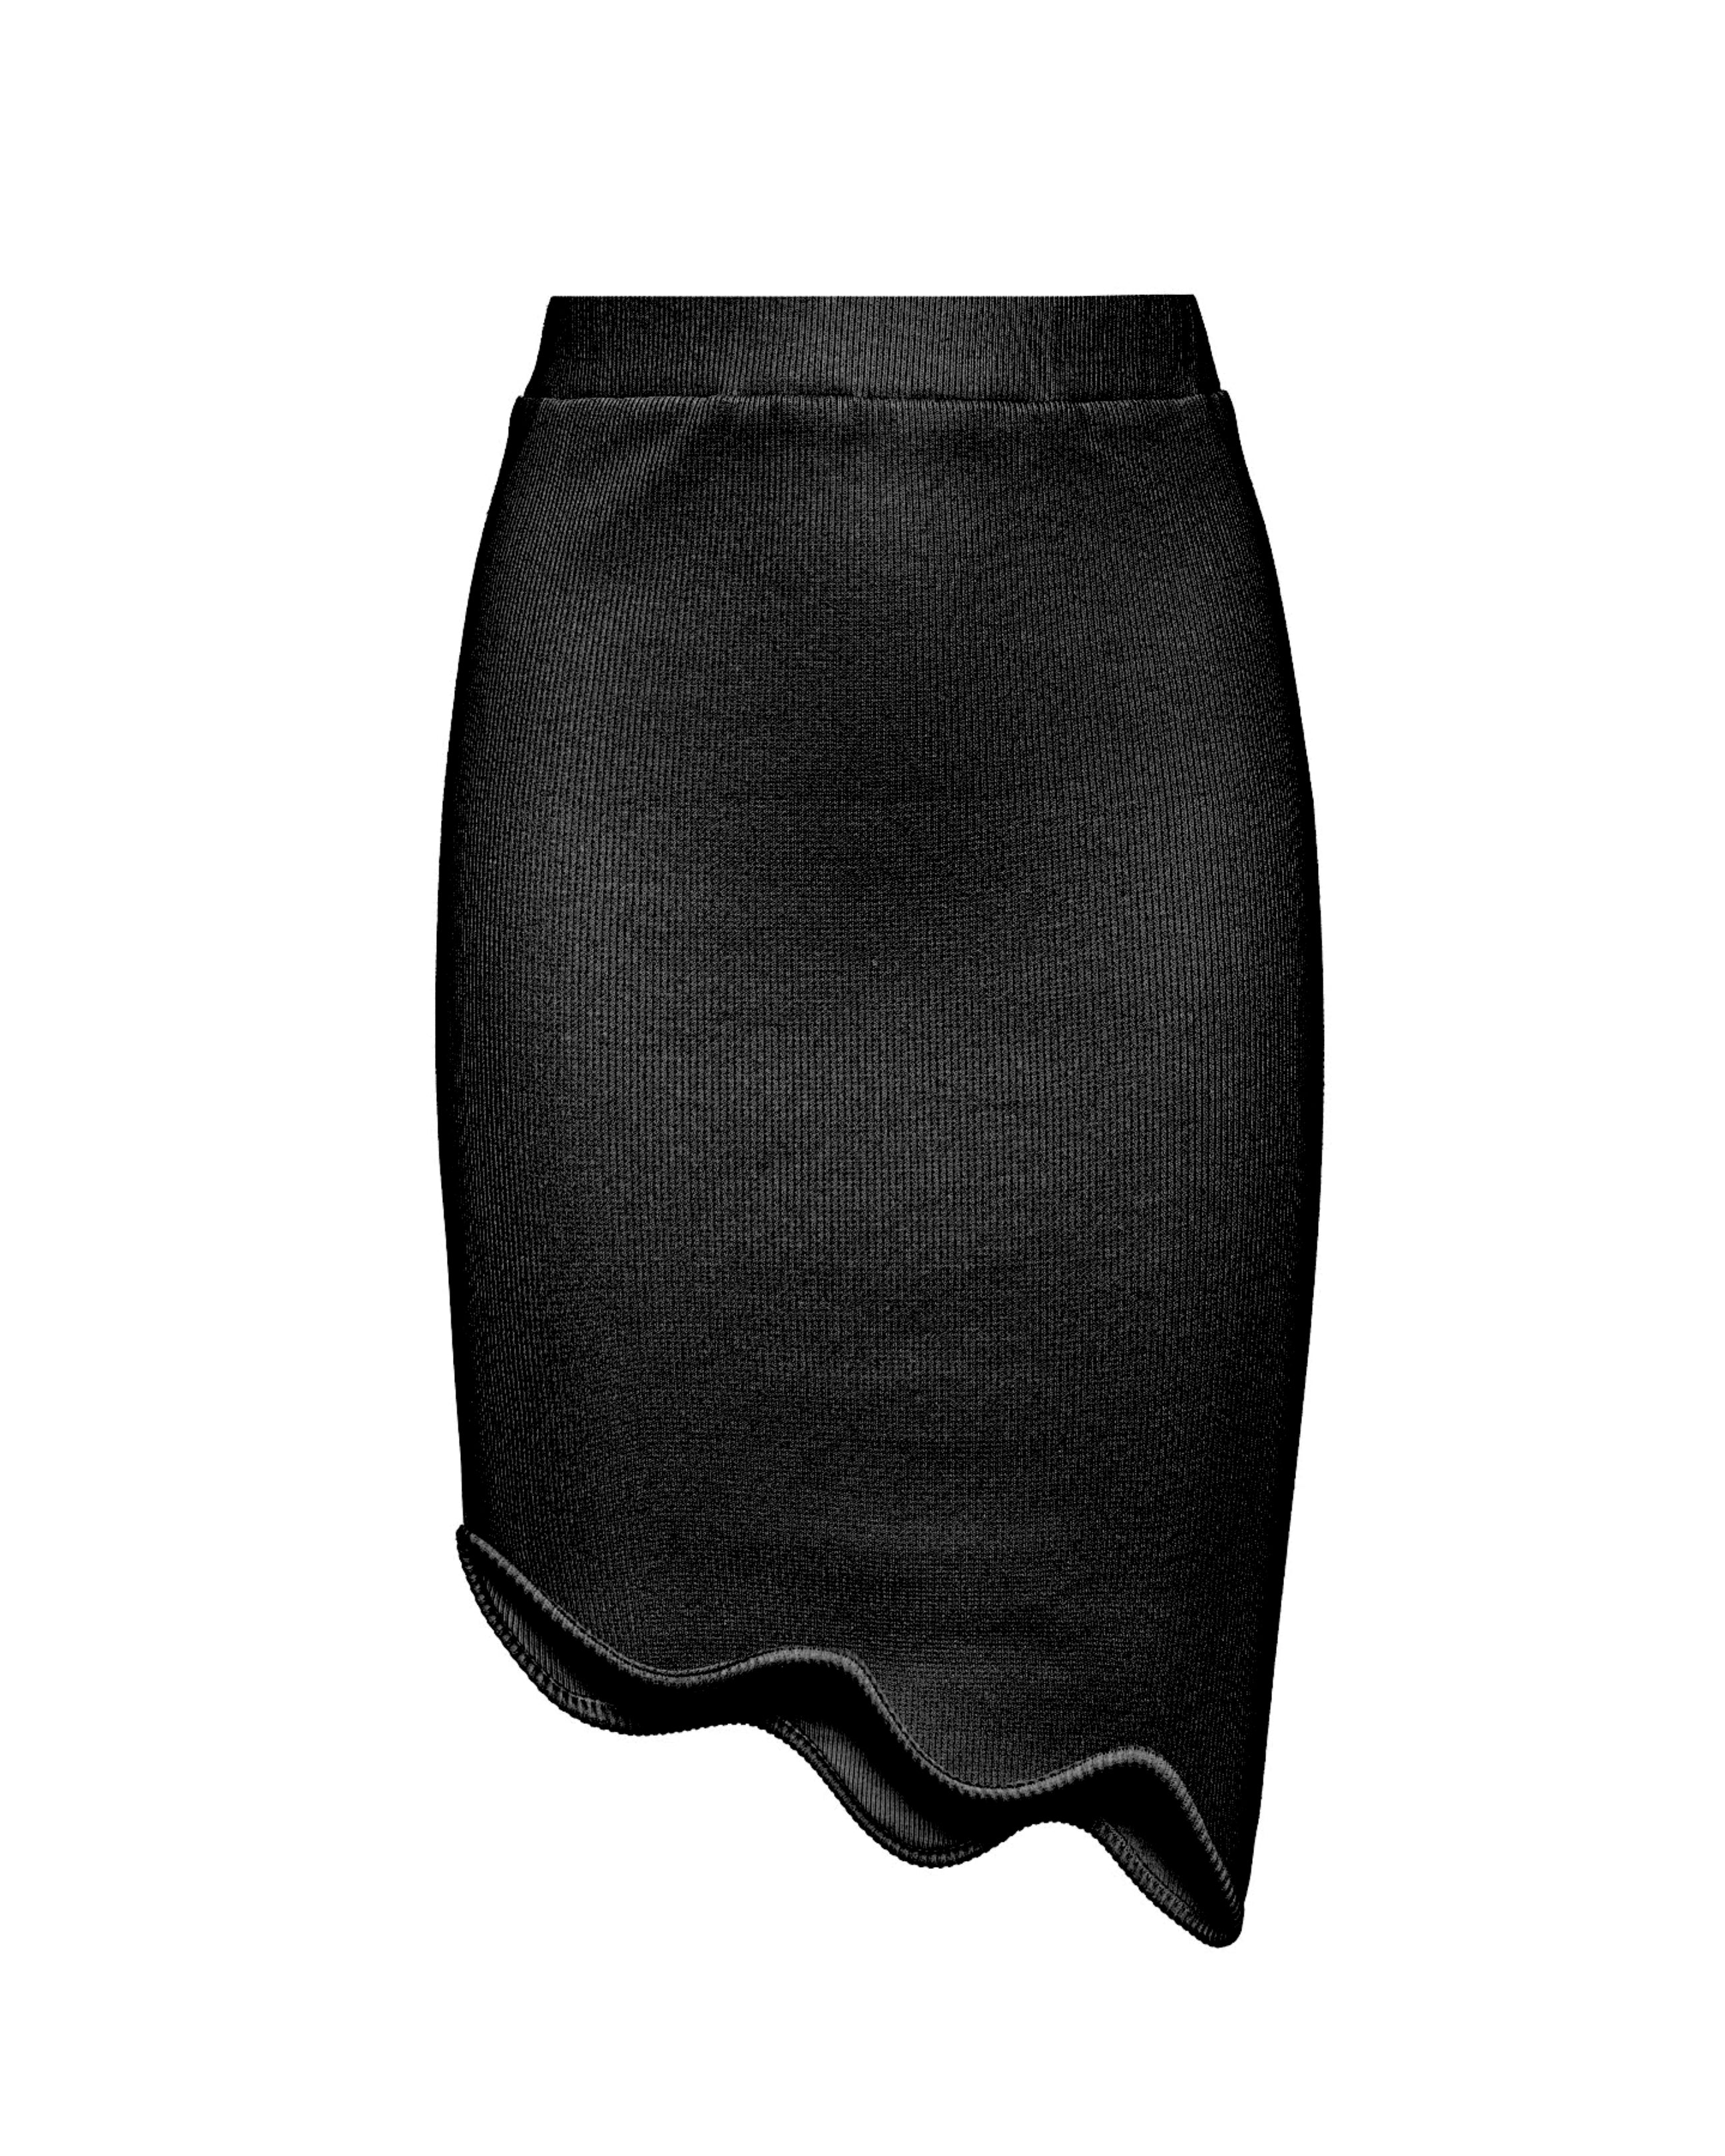 Molten mini skirt black